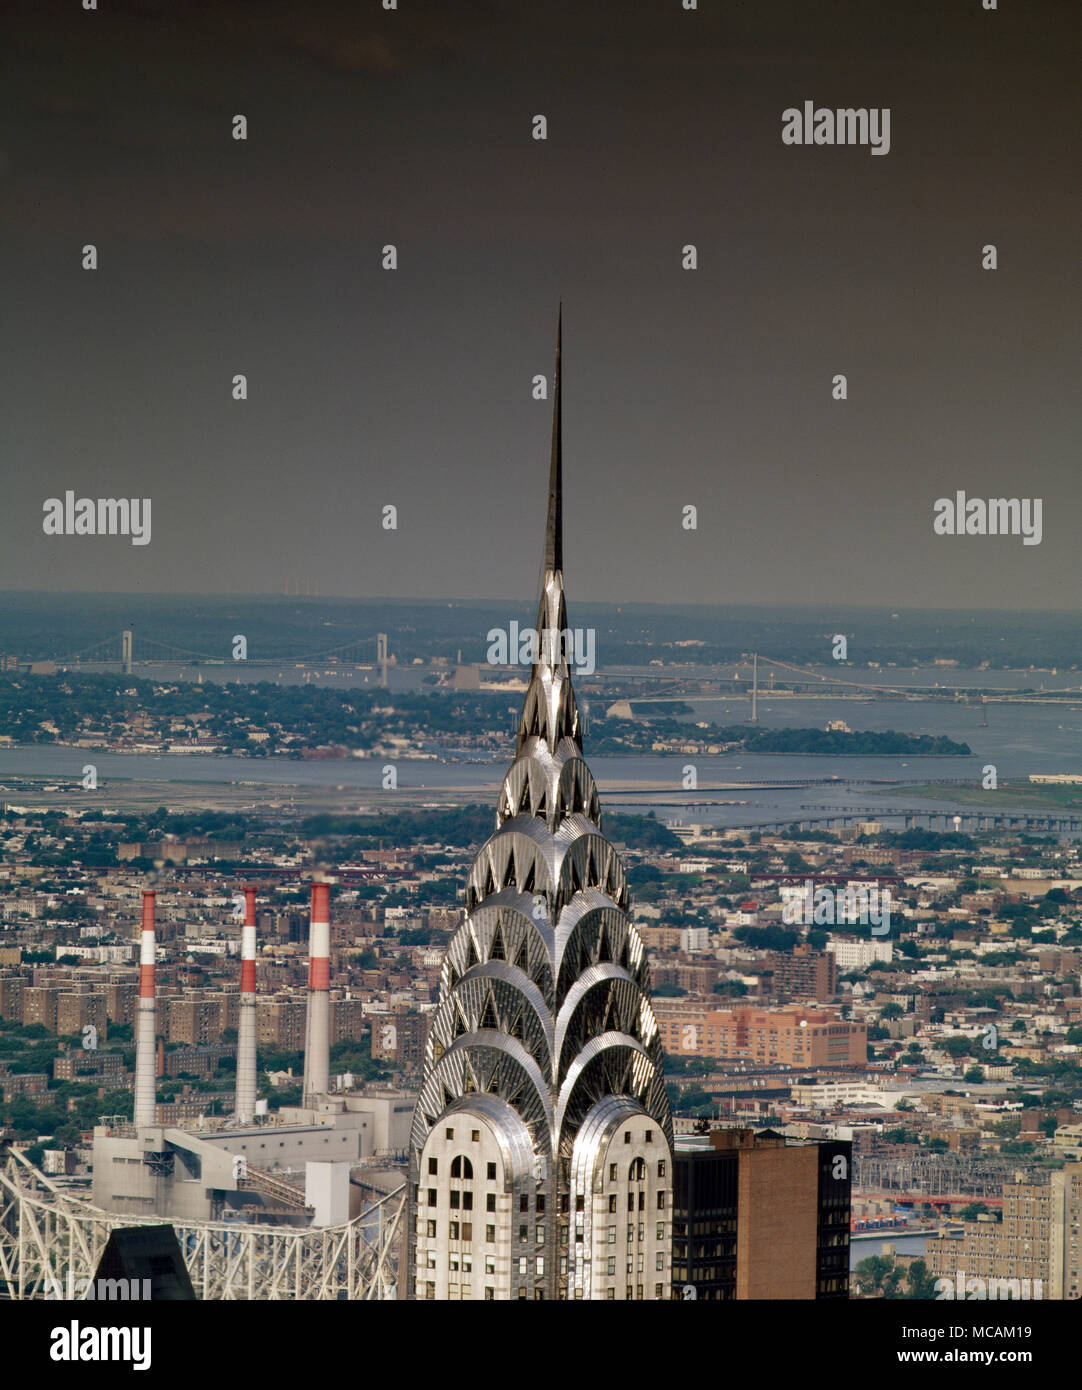 Le Chrysler Building est un gratte-ciel de style Art déco dans la ville de New York, situé sur le côté est de Manhattan dans la zone de la Baie aux Tortues à l'intersection de la 42e rue et Lexington Avenue. À 1 046 pieds , la structure a été le plus haut bâtiment du monde pendant 11 mois avant qu'il a été dépassé par l'Empire State Building en 1931 c'est toujours le plus haut bâtiment en brique du monde, bien qu'avec un squelette interne en acier. Banque D'Images